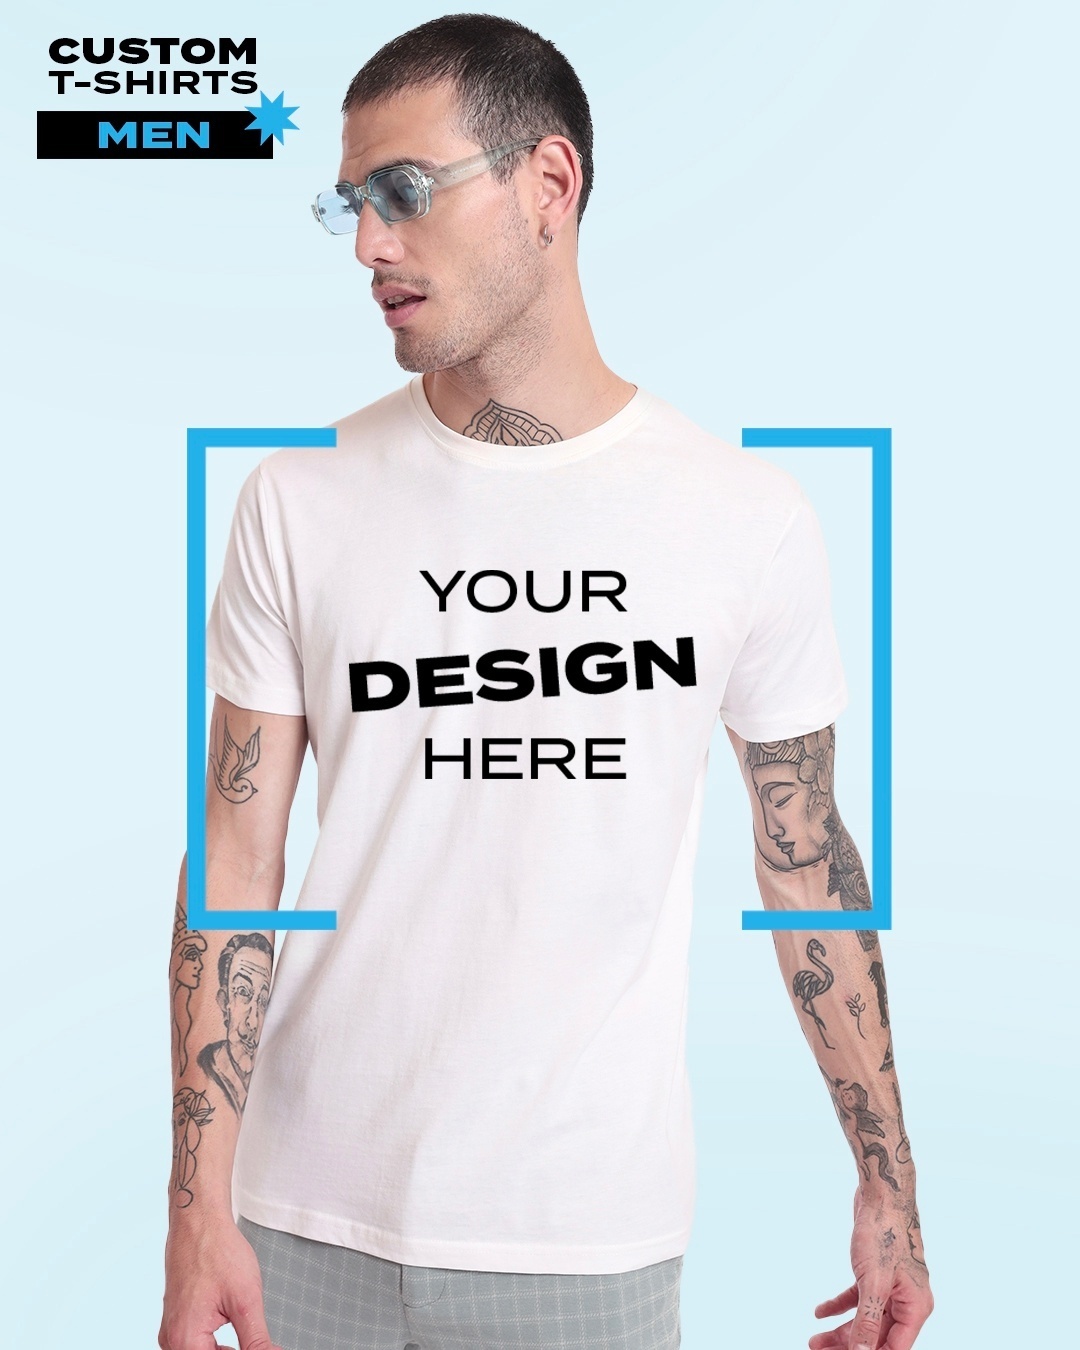 Buy Men's White Customizable T-shirt Online at Bewakoof